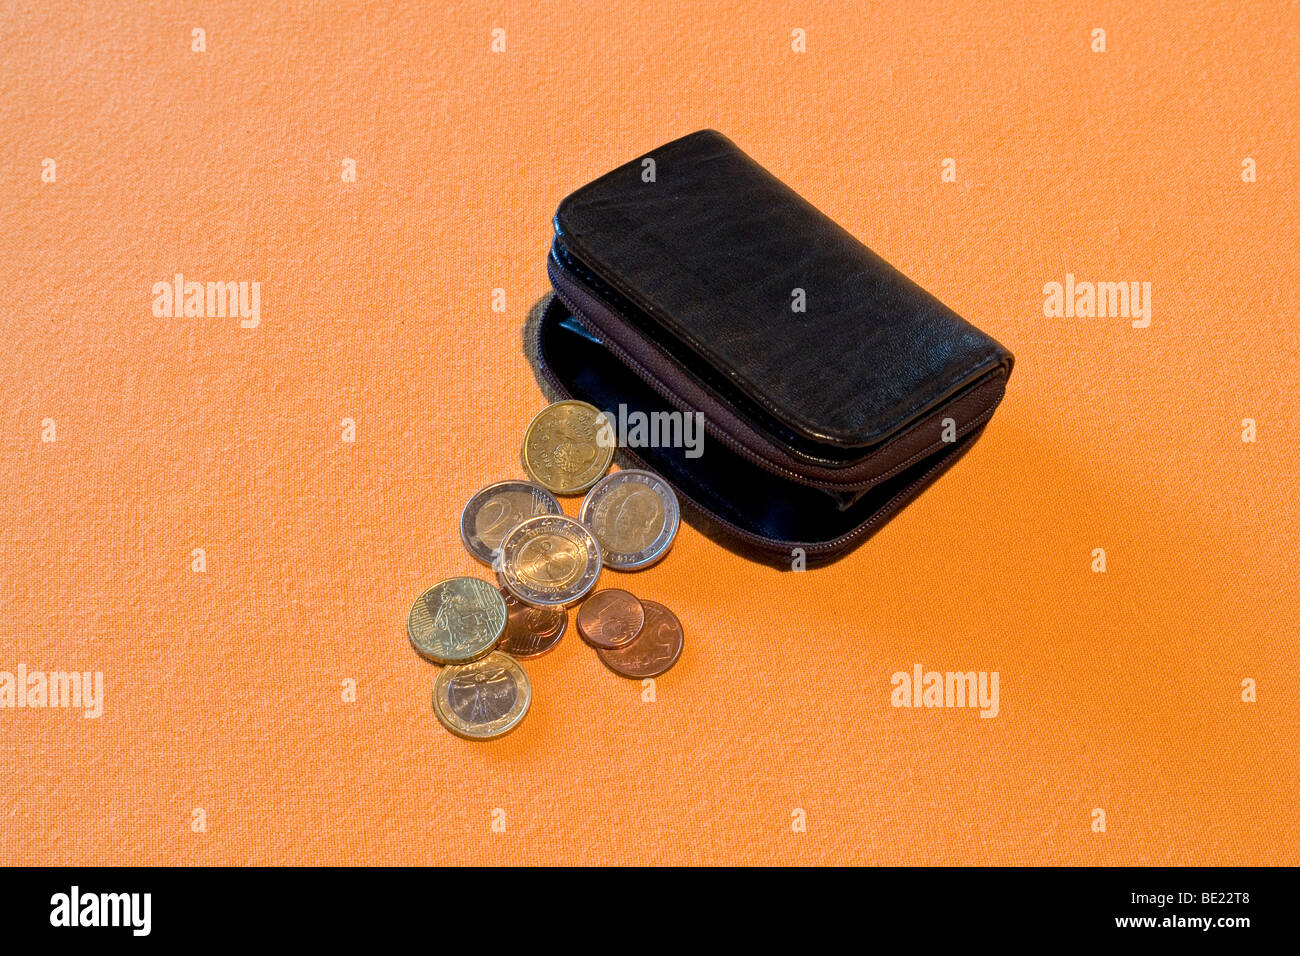 Half-open black leather purse with loose change spread out on an orange support. Porte-monnaie noir et menue monnaie. Stock Photo